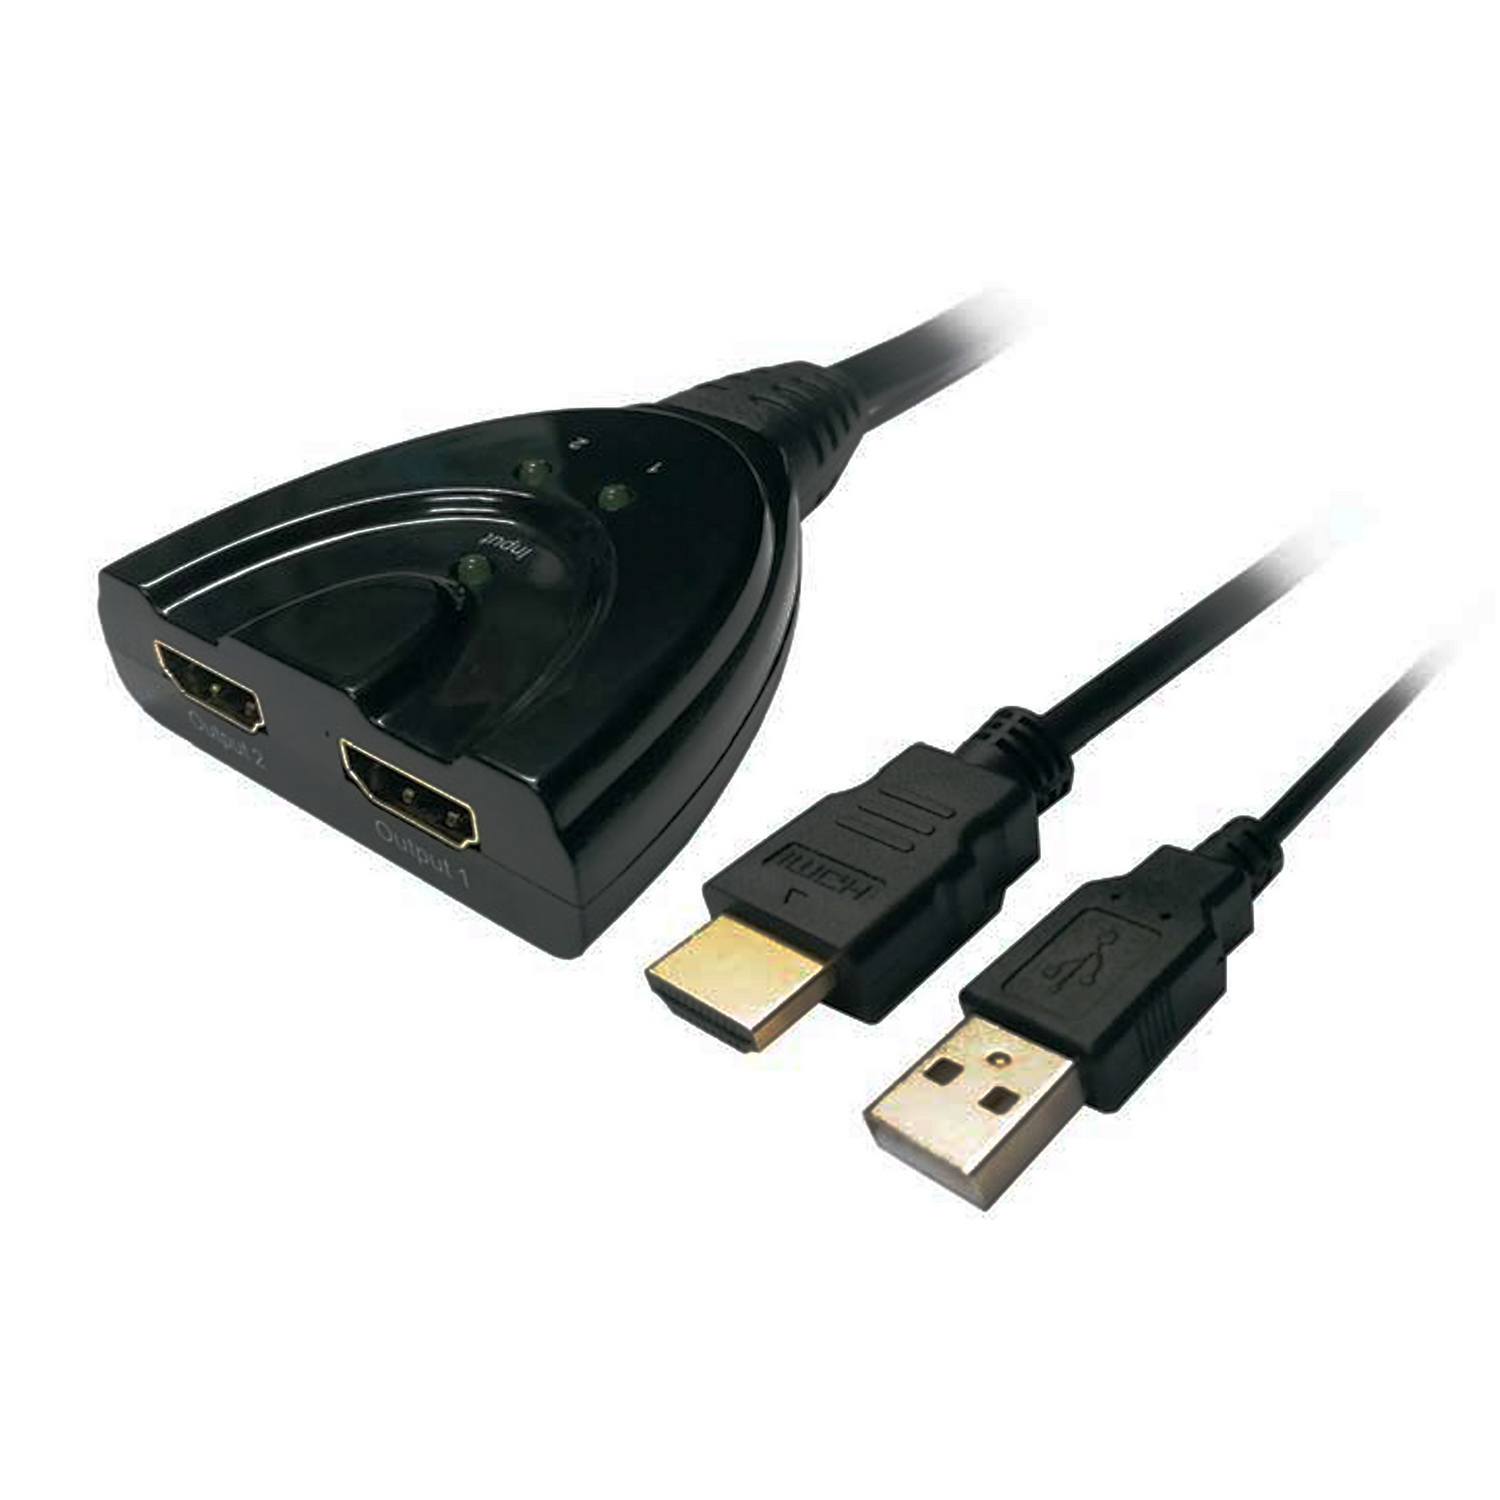 Comprar Multiplicador de señal HDMI Online - Sonicolor